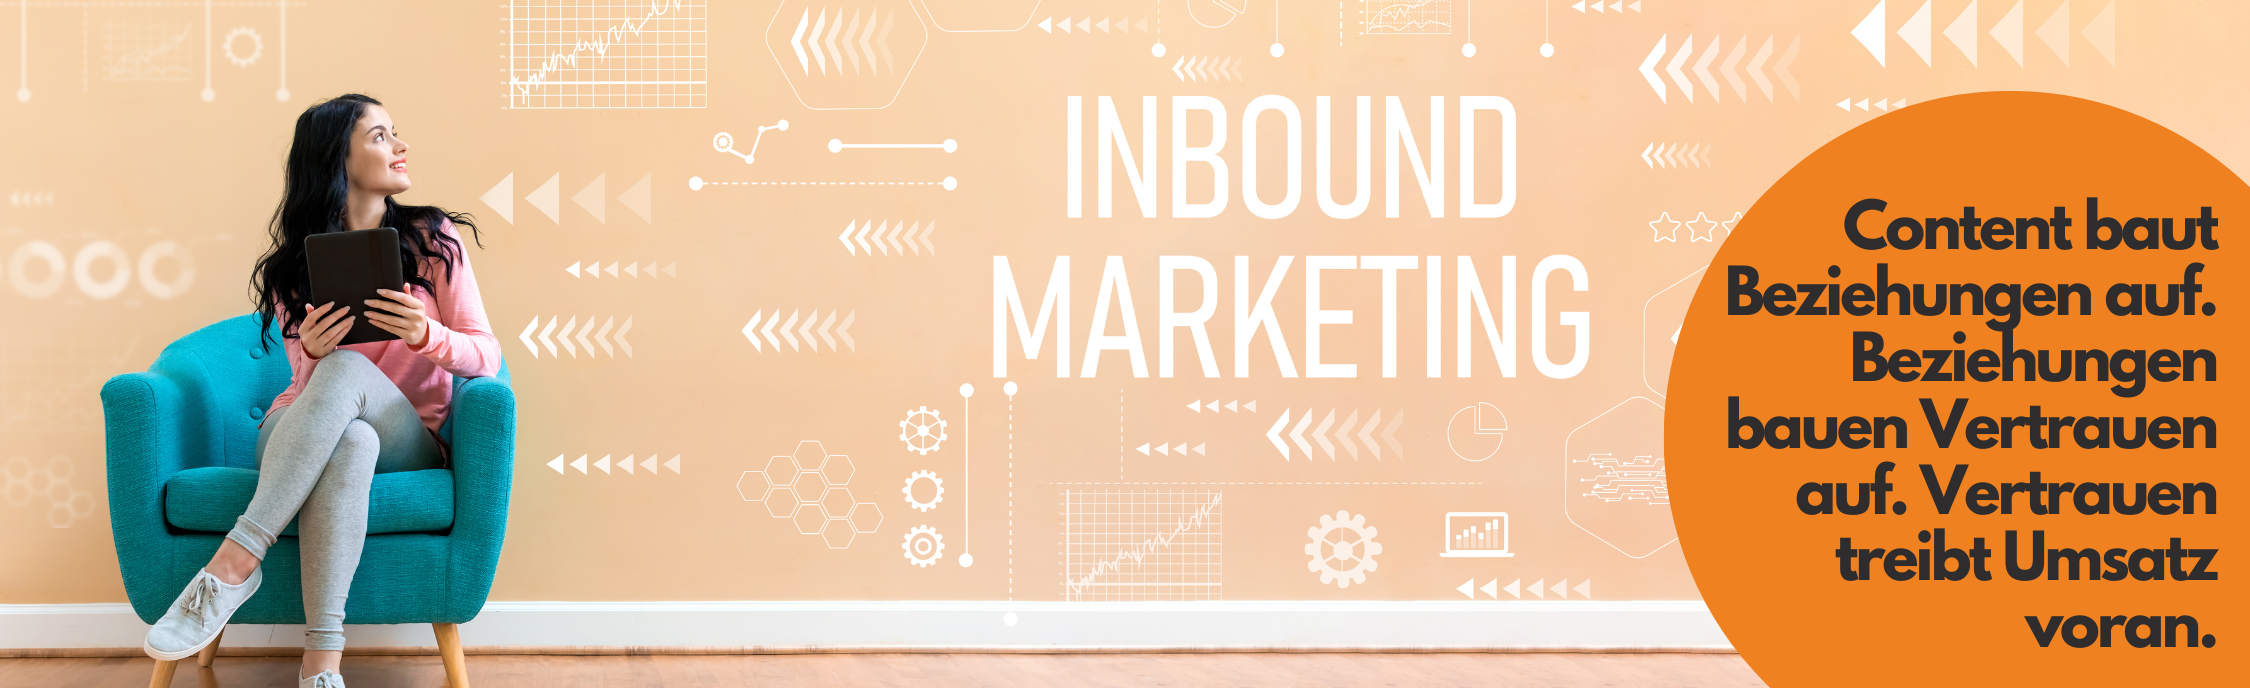 inbound 1 - Inbound Marketing